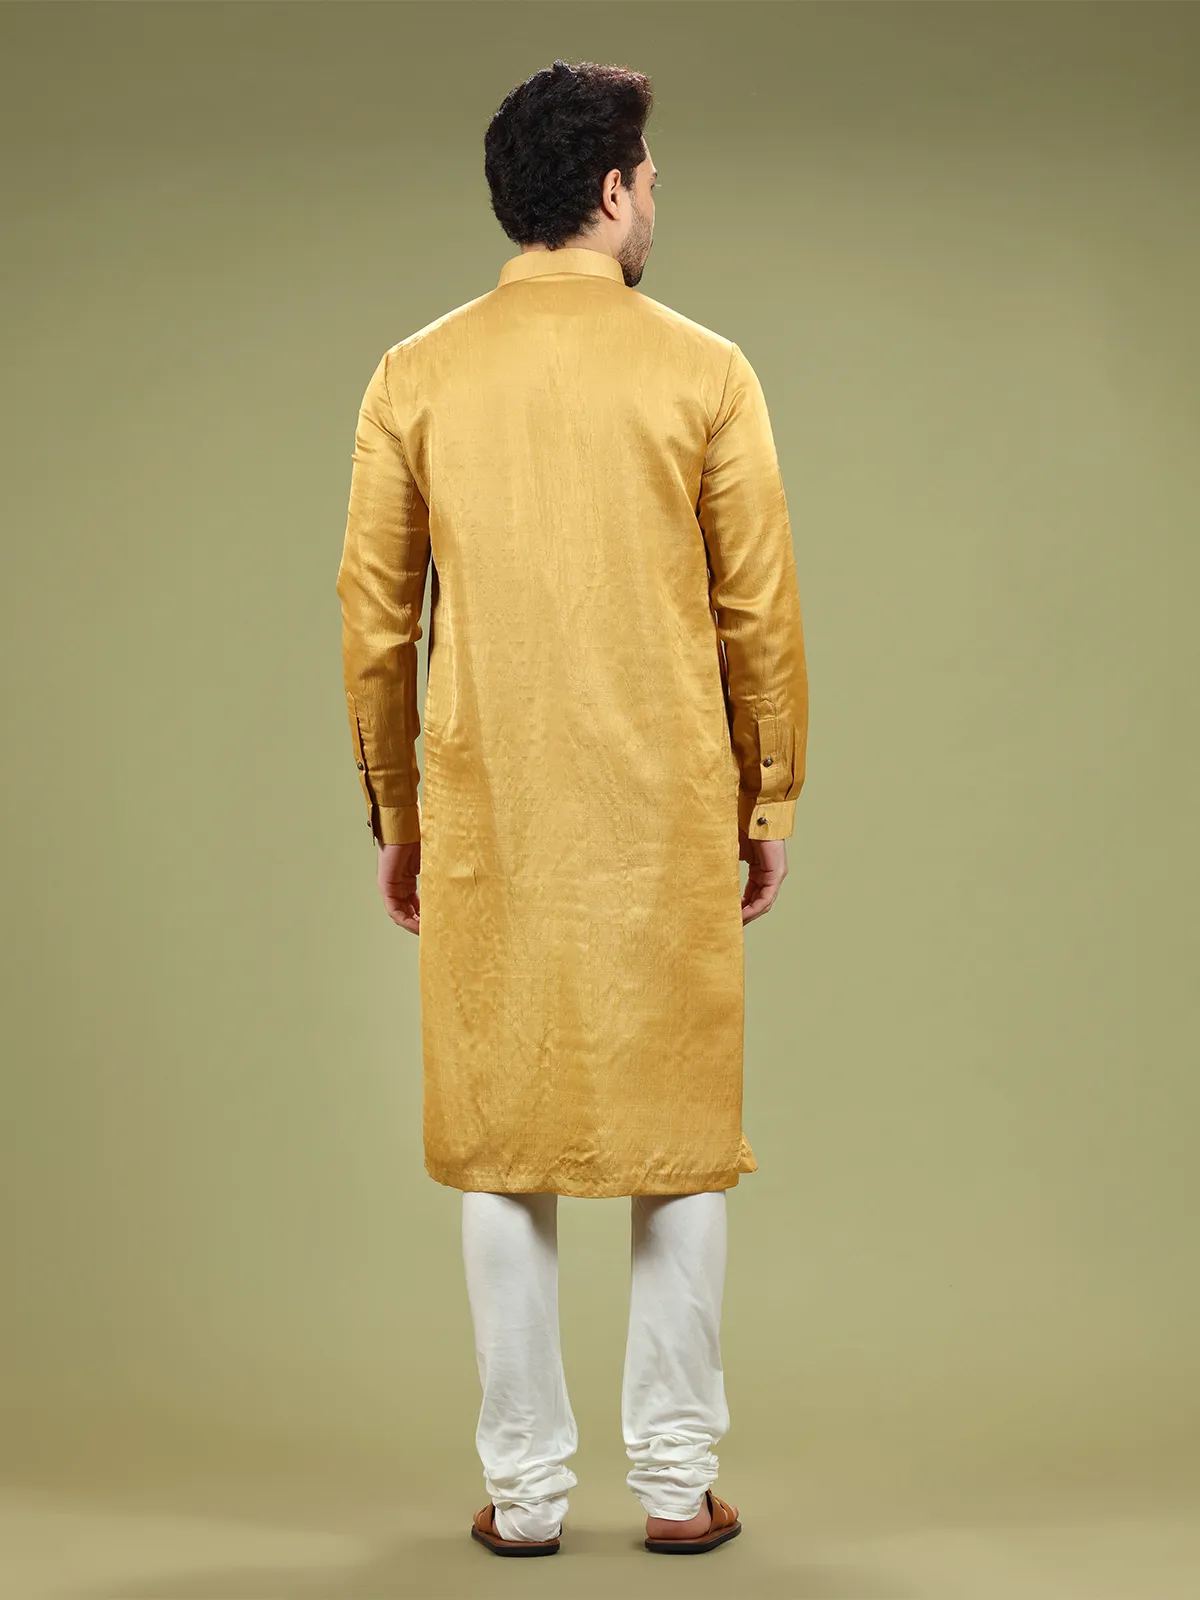 Mustard yellow silk plain kurta suit